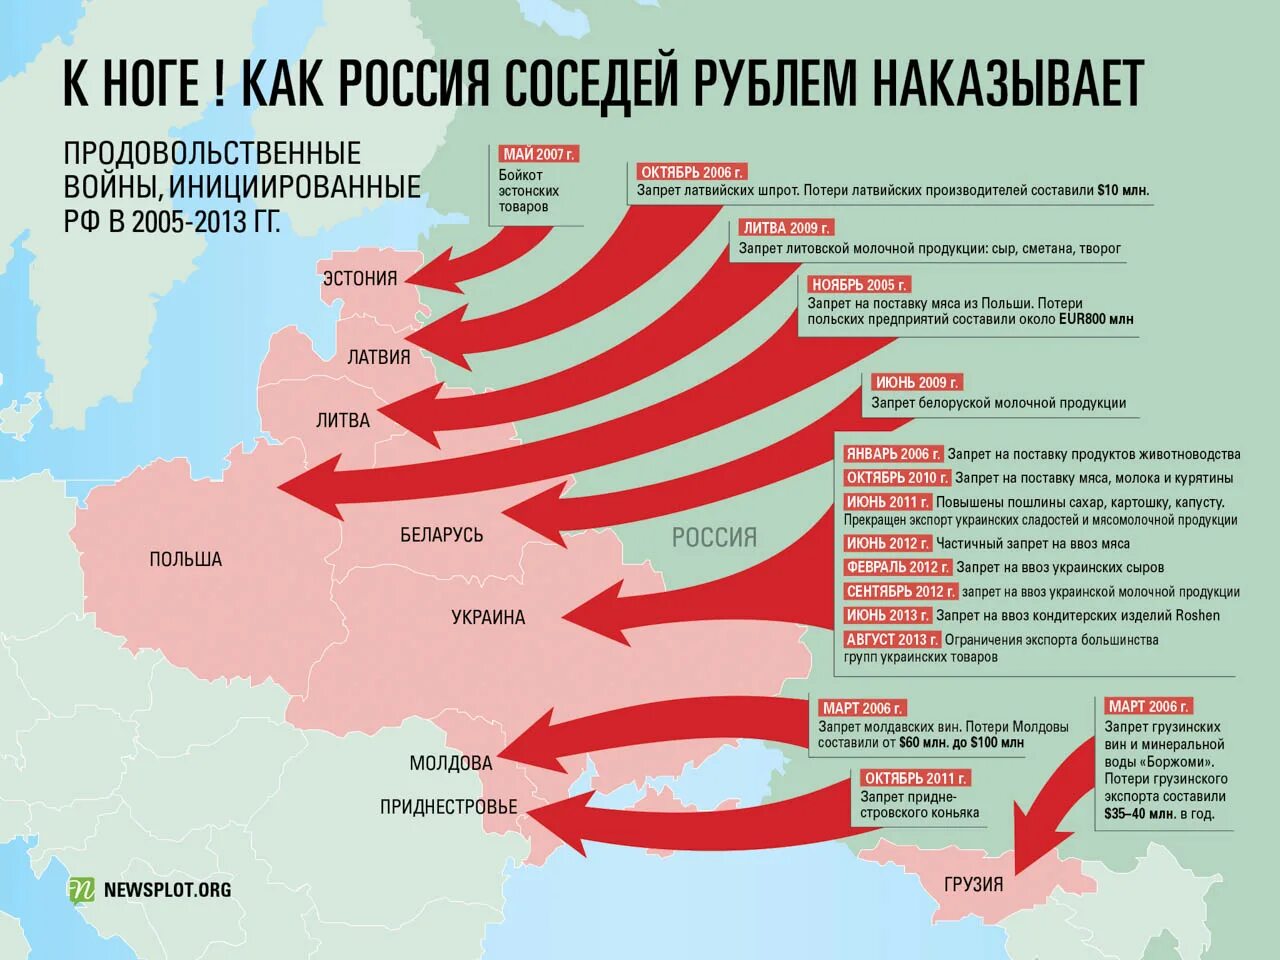 План вторжения на Украину. Карта вайна Росси в Украину. Стары которые воюют с Украиной. Государство, с которым воевала Россия.